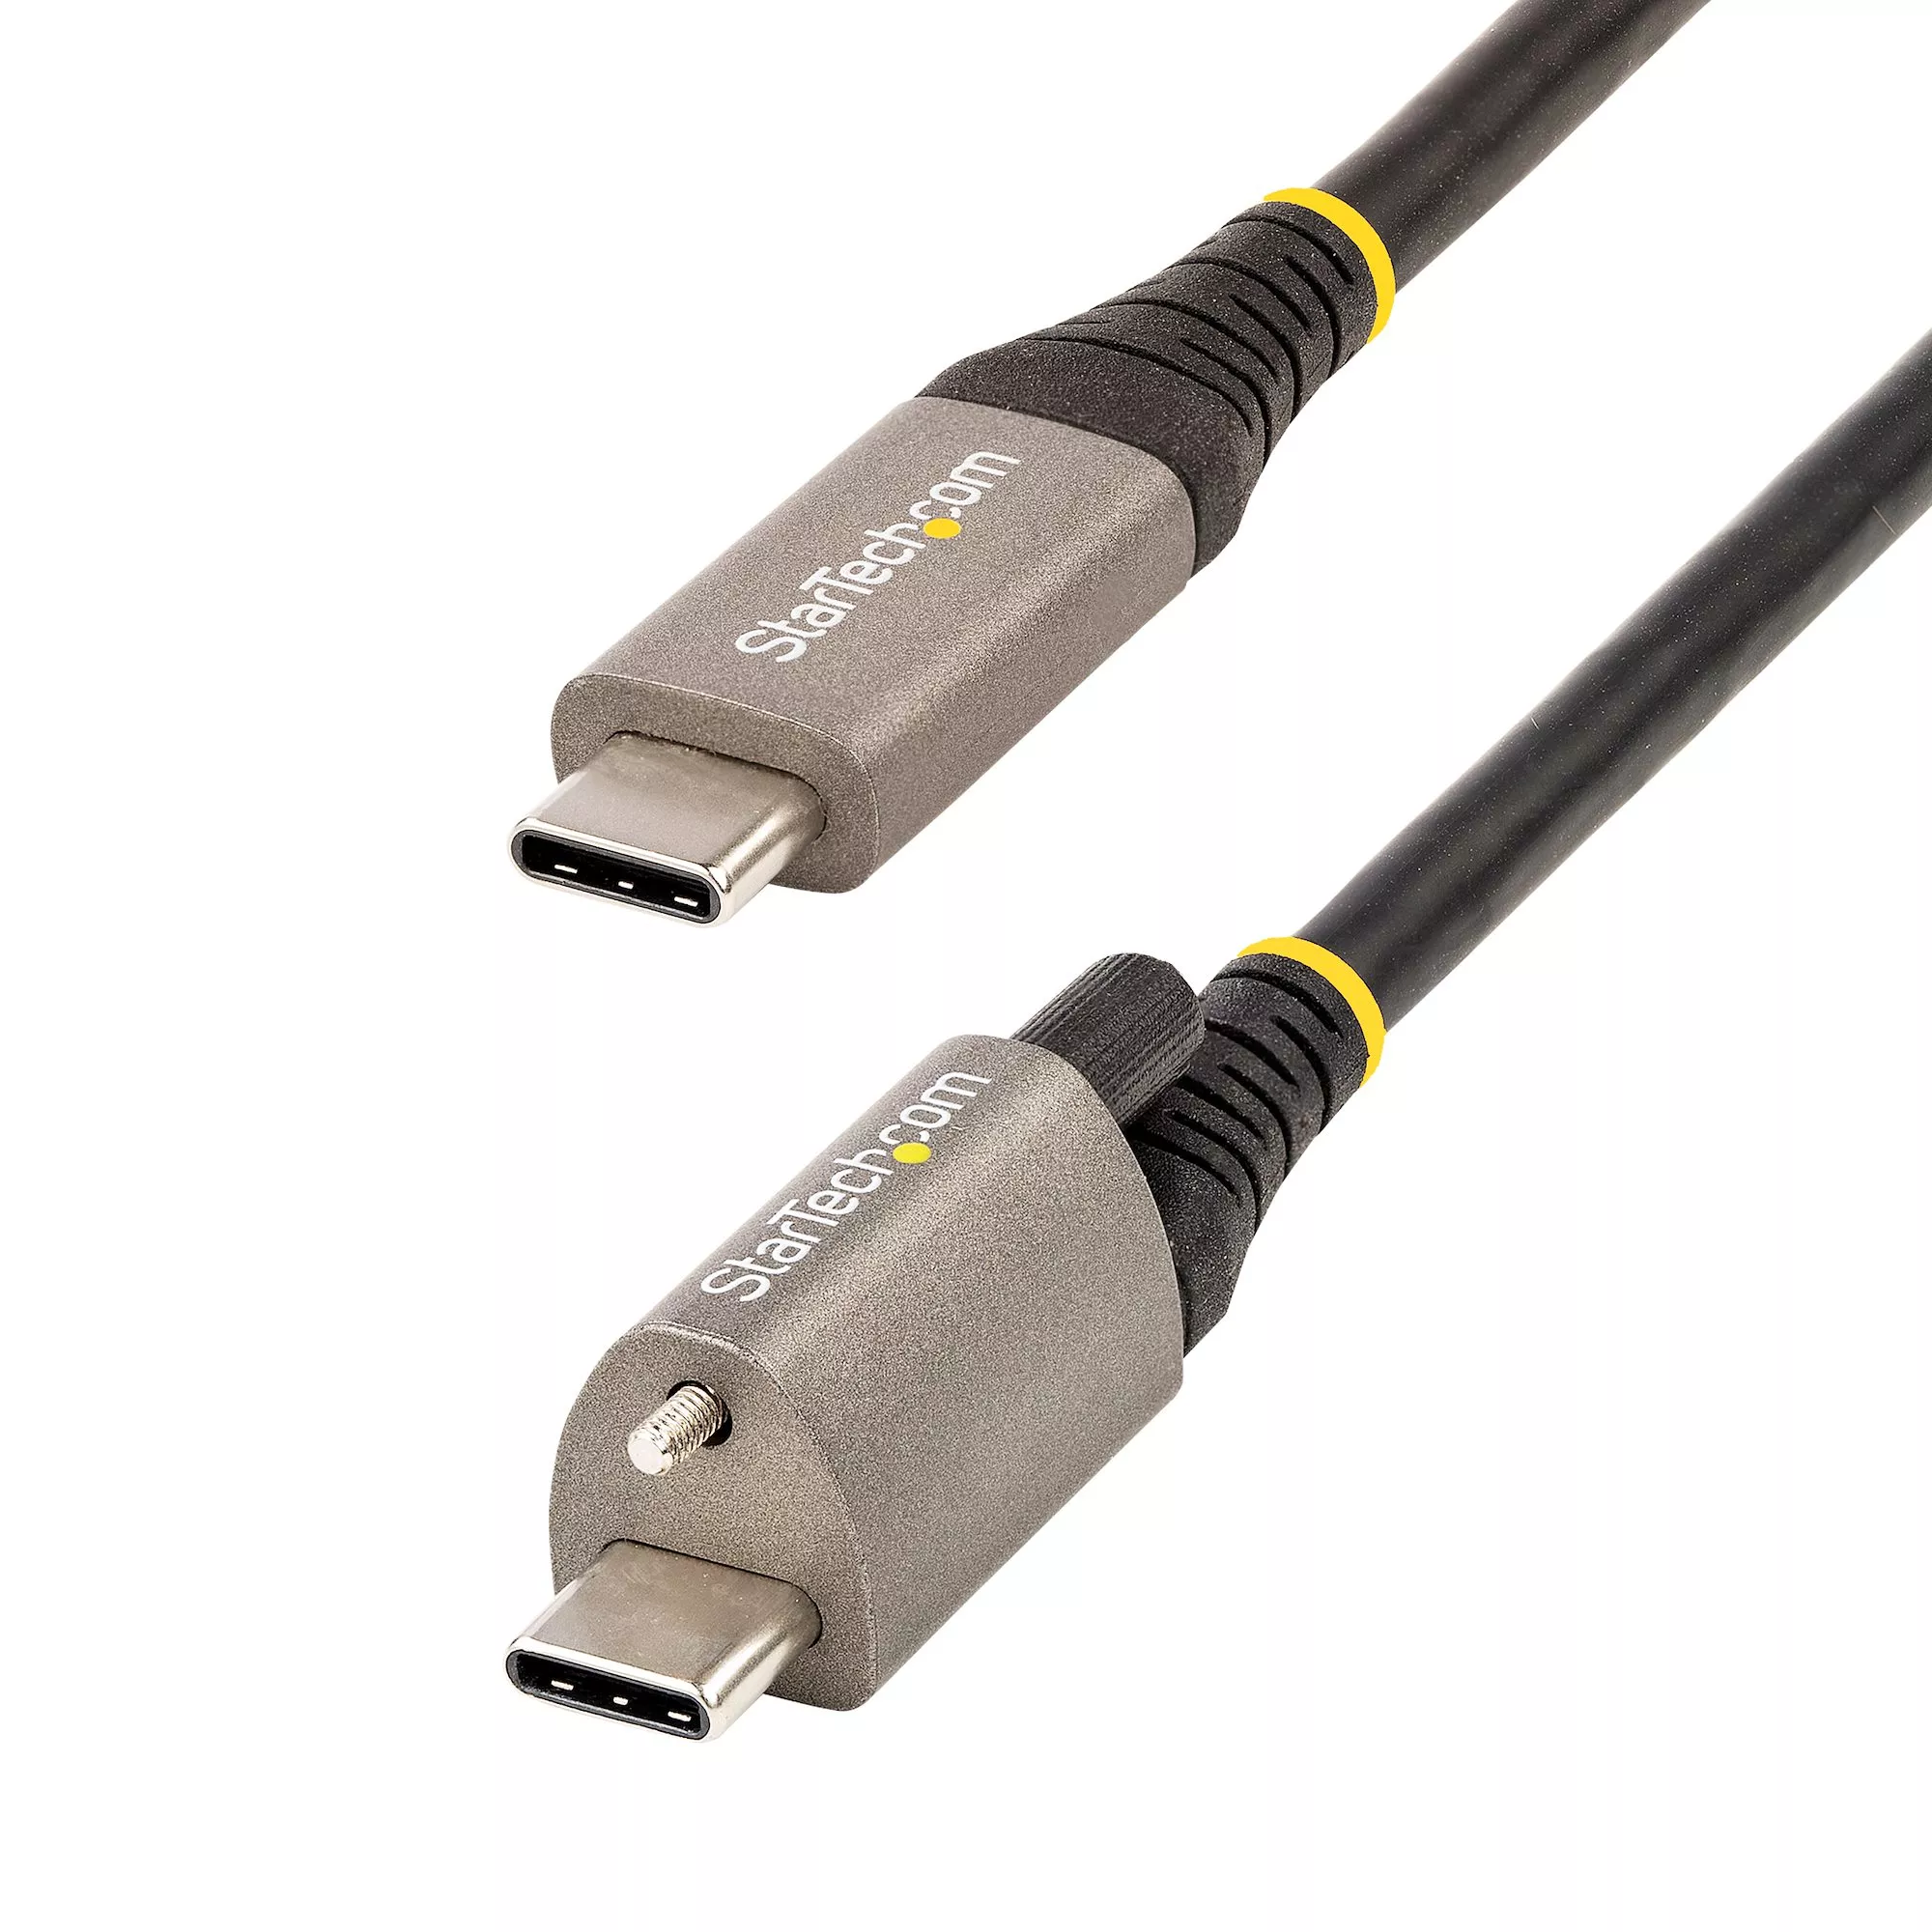 Achat Câble USB StarTech.com Câble USB C 10Gbps 50cm à Verouillage par sur hello RSE